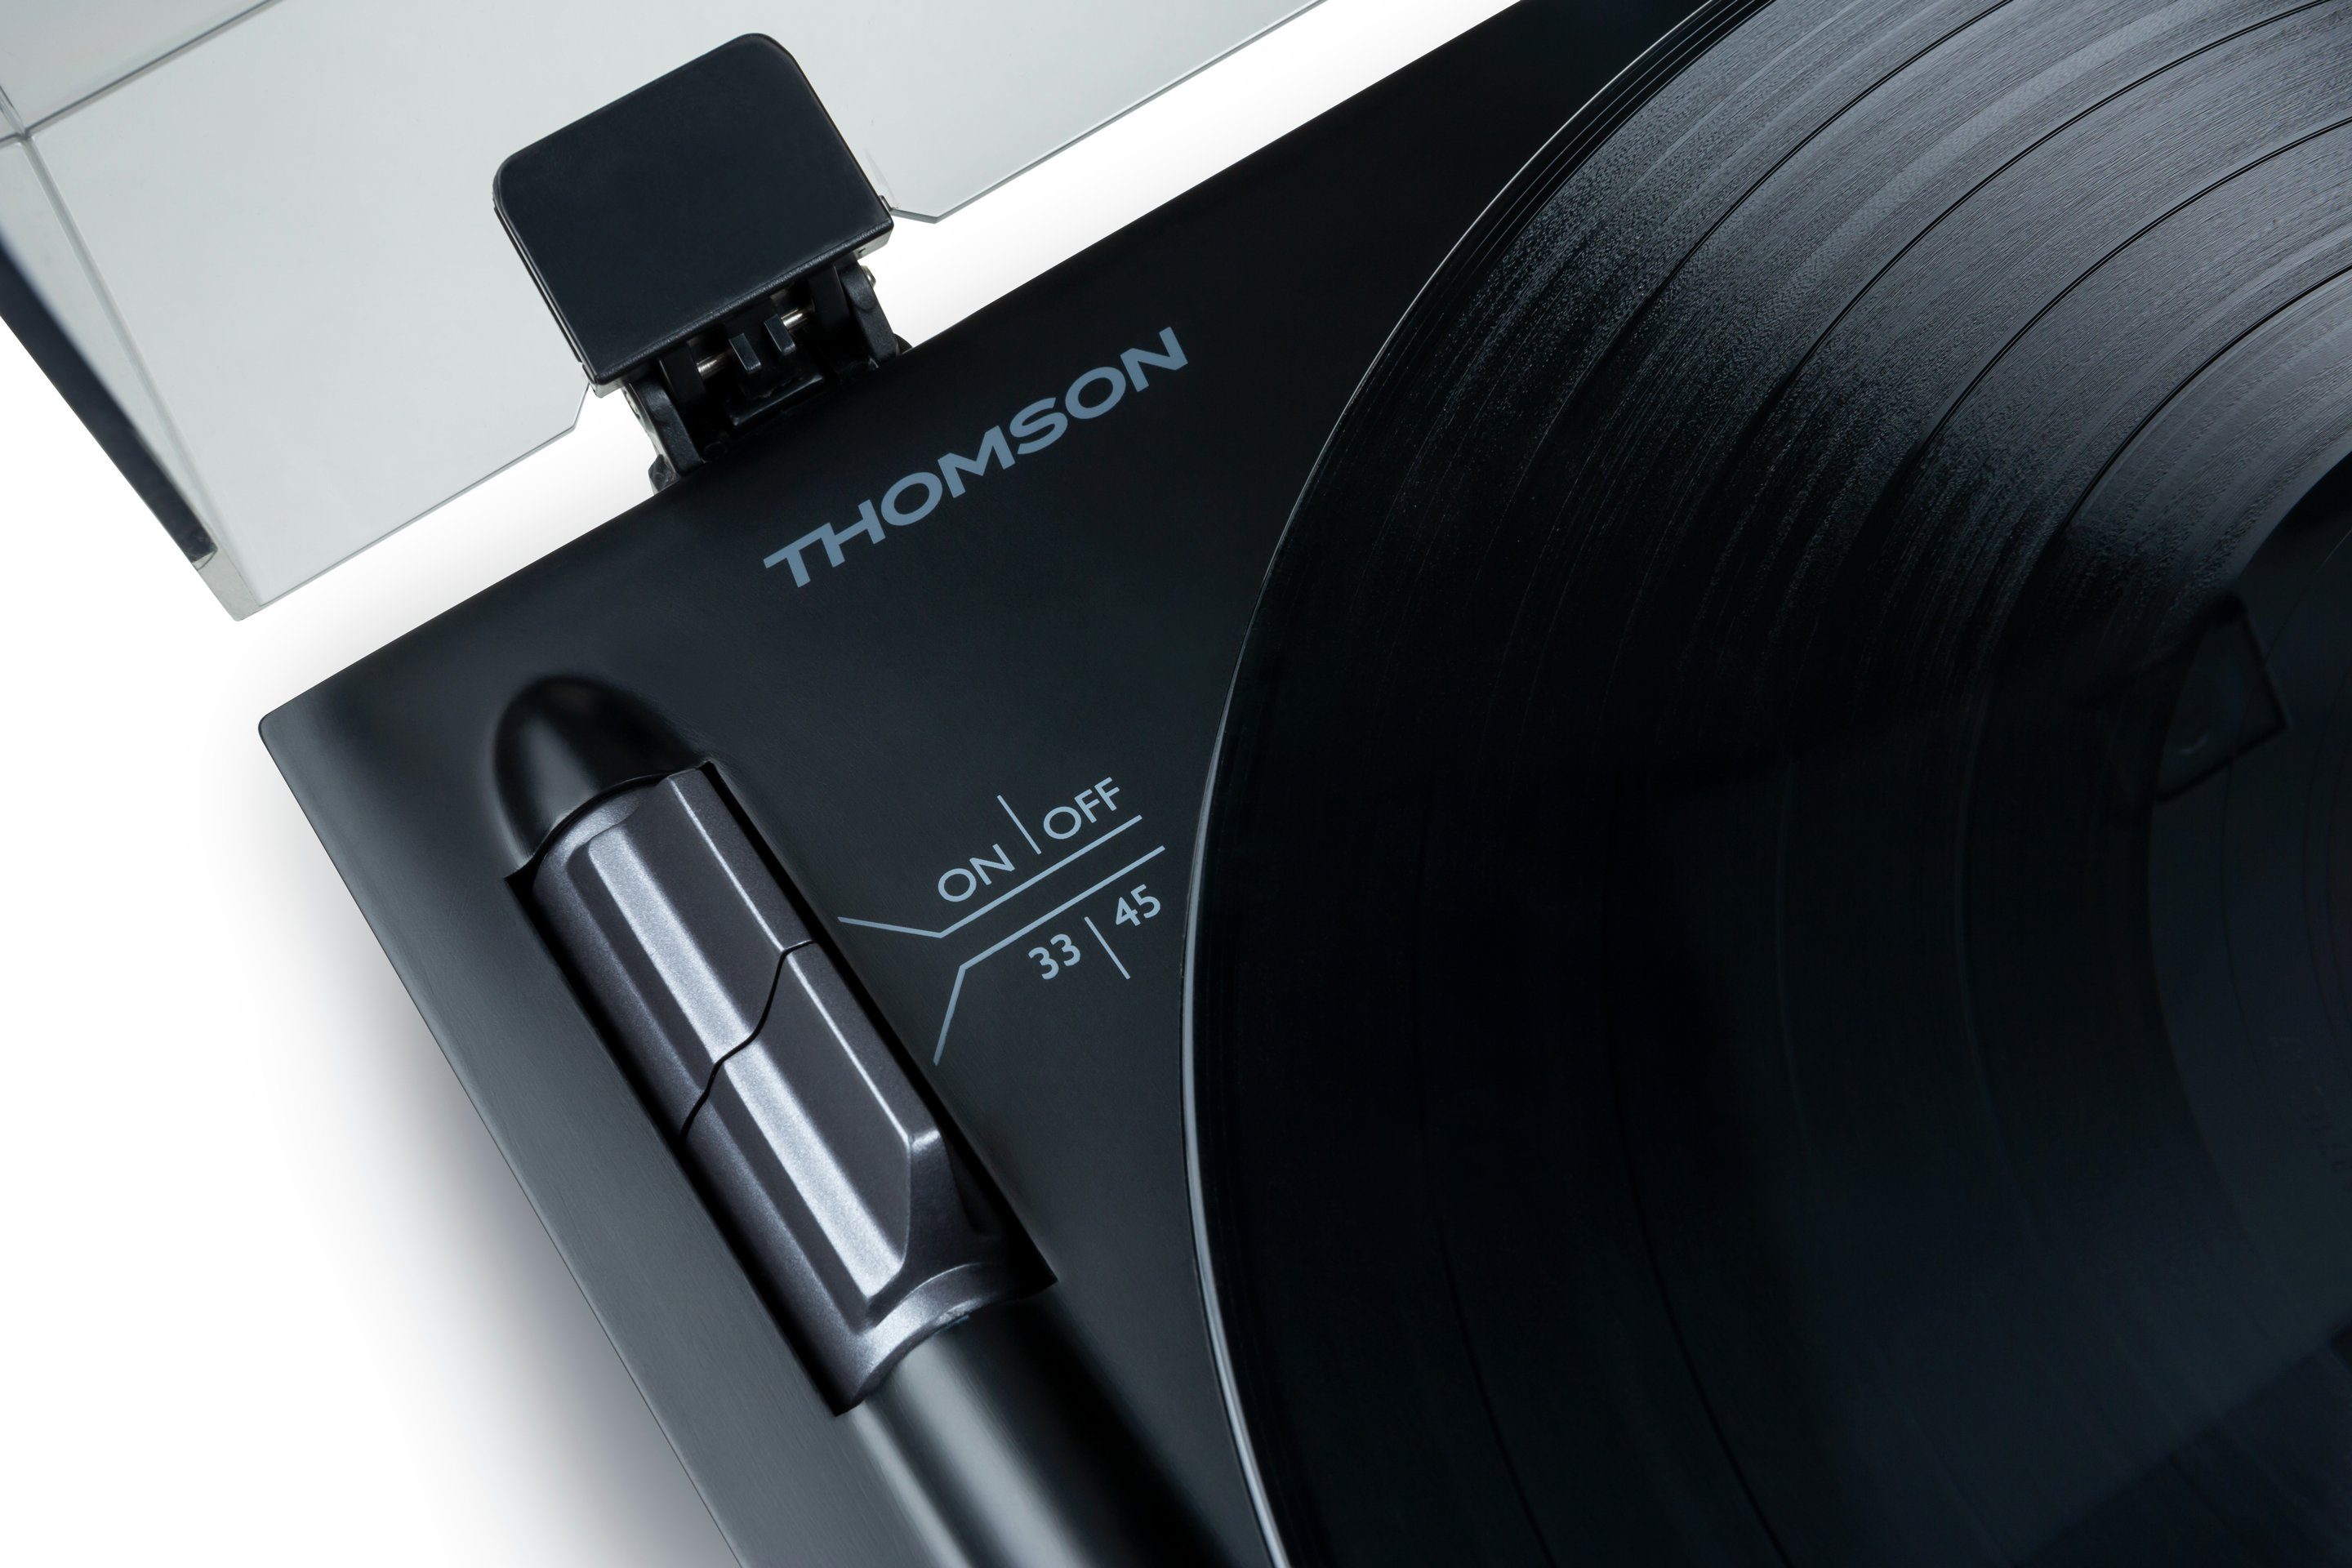 Thomson Plattenspieler schwarz/grau TT700 (Riemenantrieb)